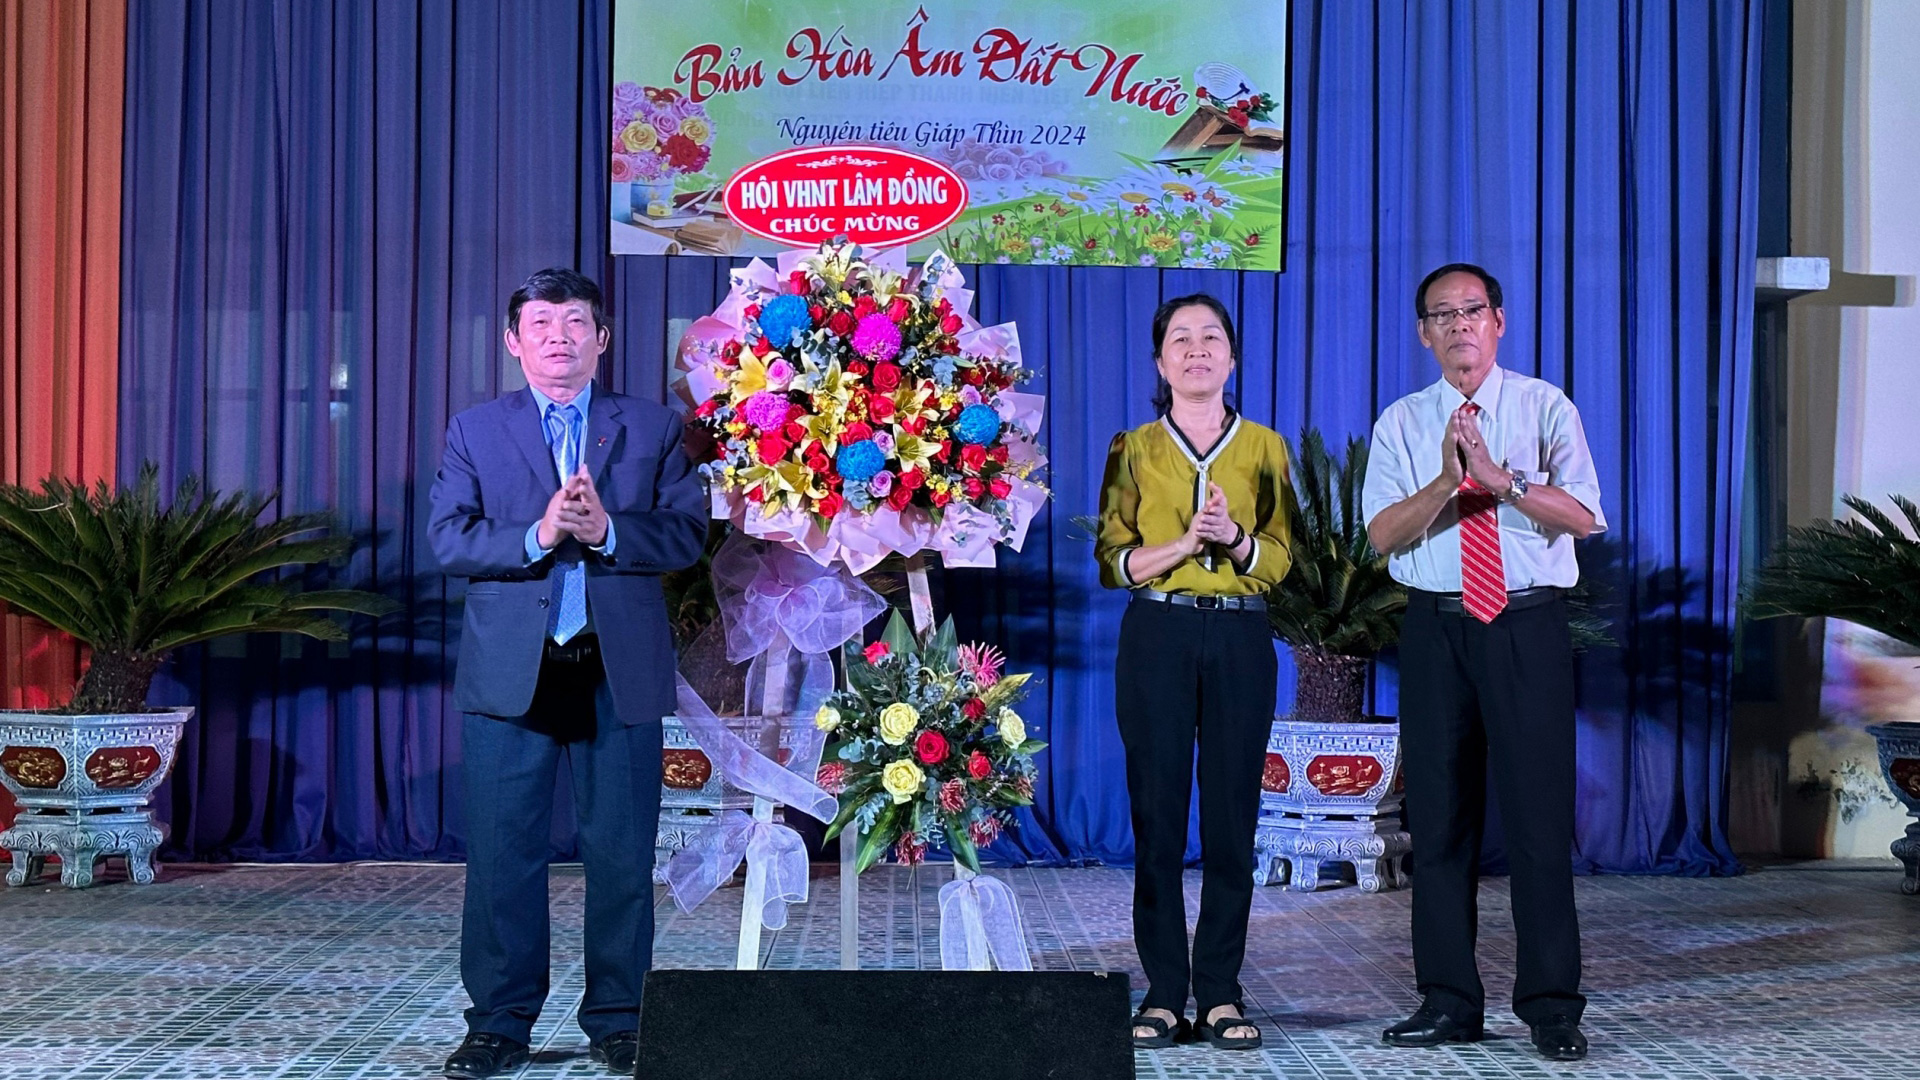 Lãnh đạo Hội VHNT Lâm Đồng tặng hoa chúc mừng  Ngày Thơ Việt Nam